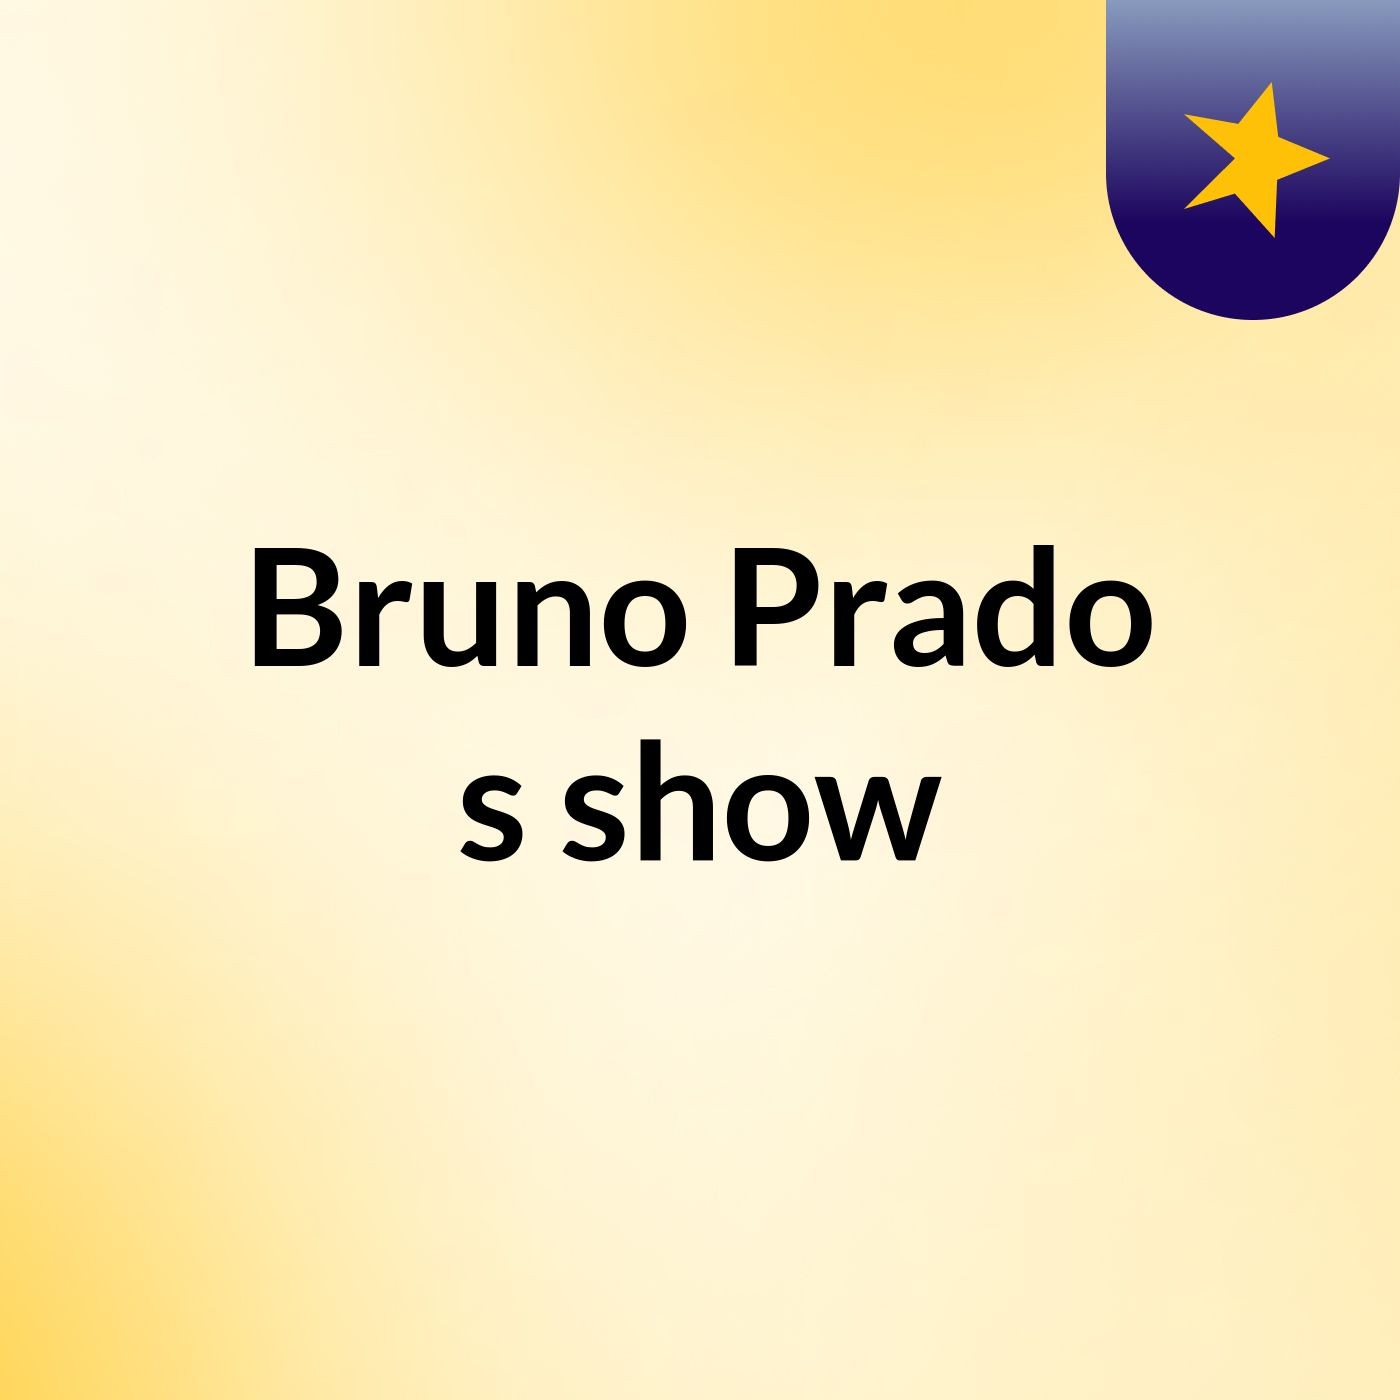 Bruno Prado's show